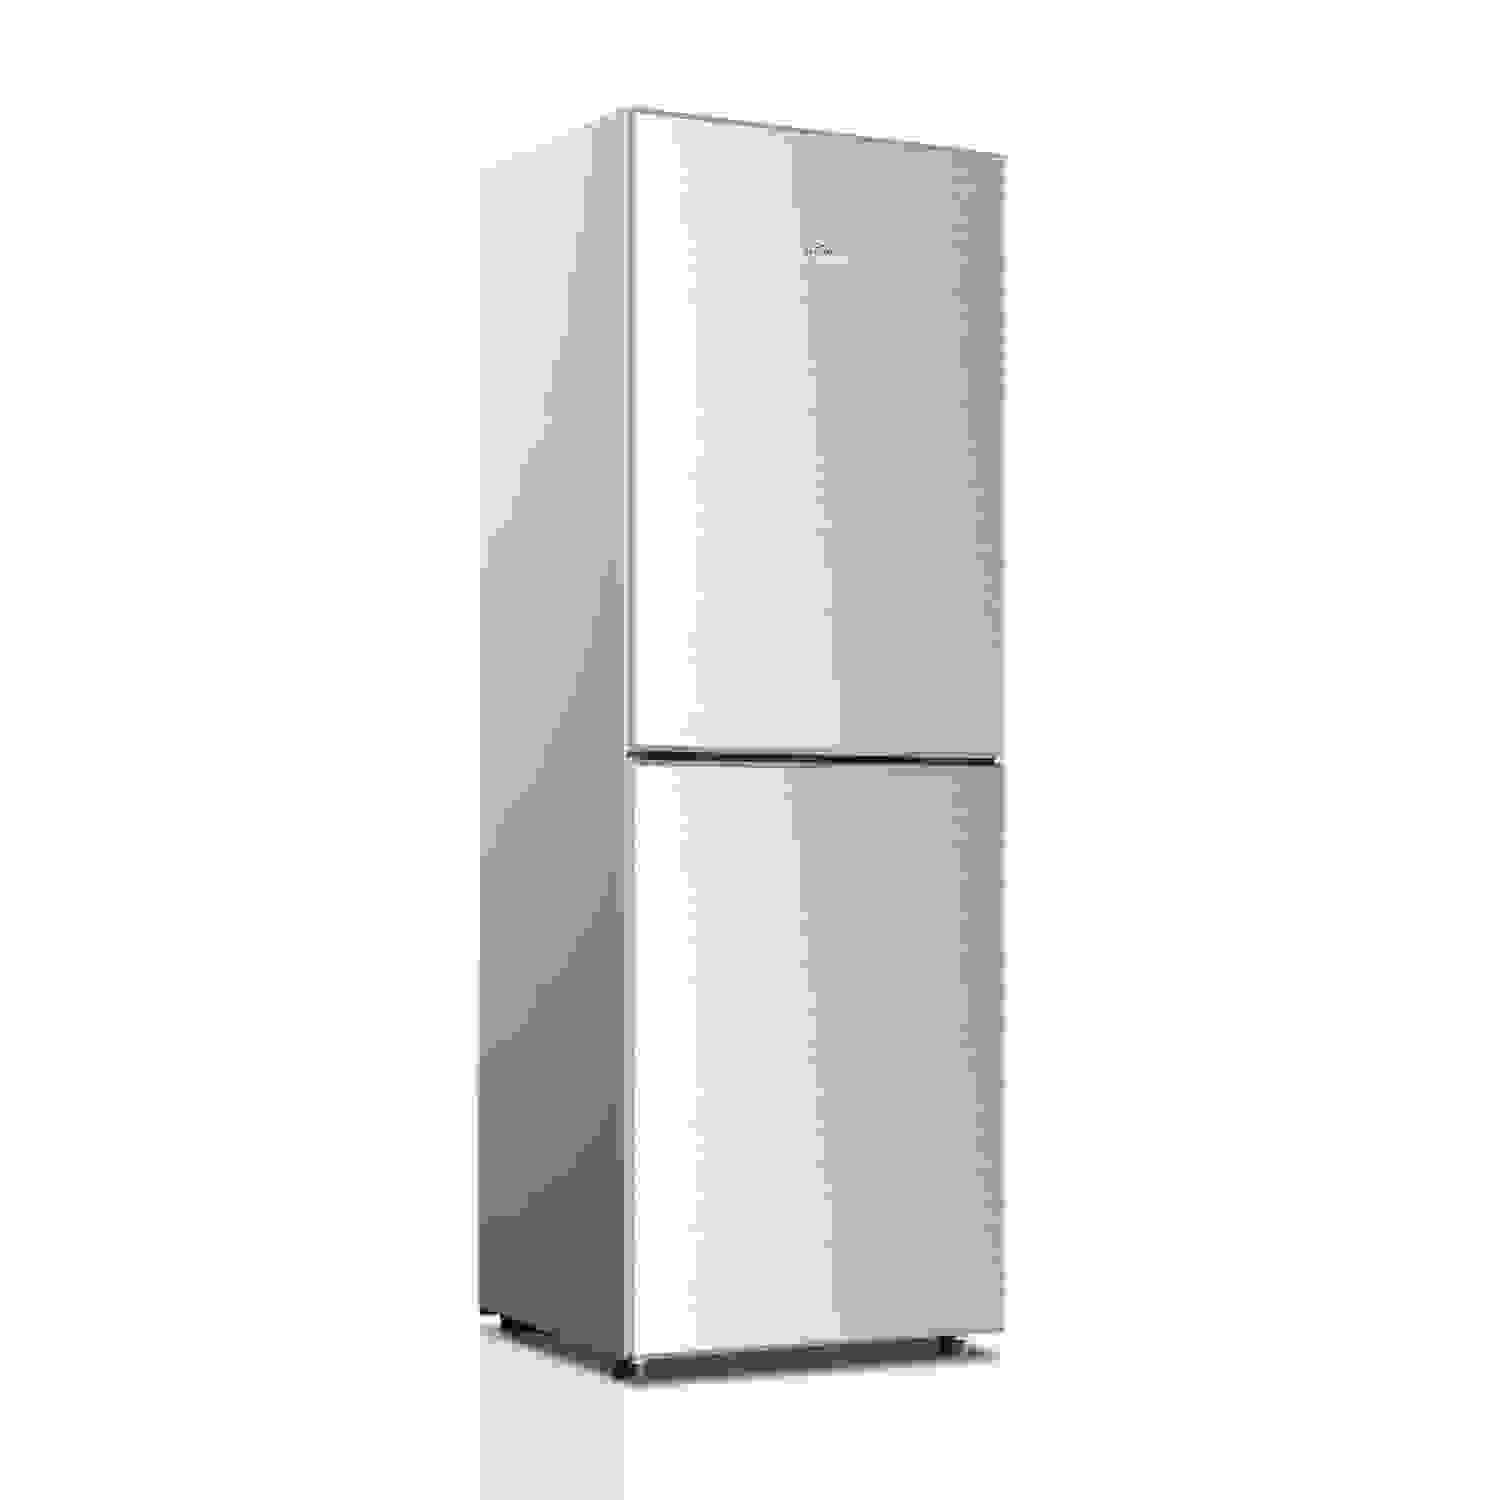 Midea/美的 MD冰箱BCD-196SMK(E)闪白银冰箱 说明书.pdf